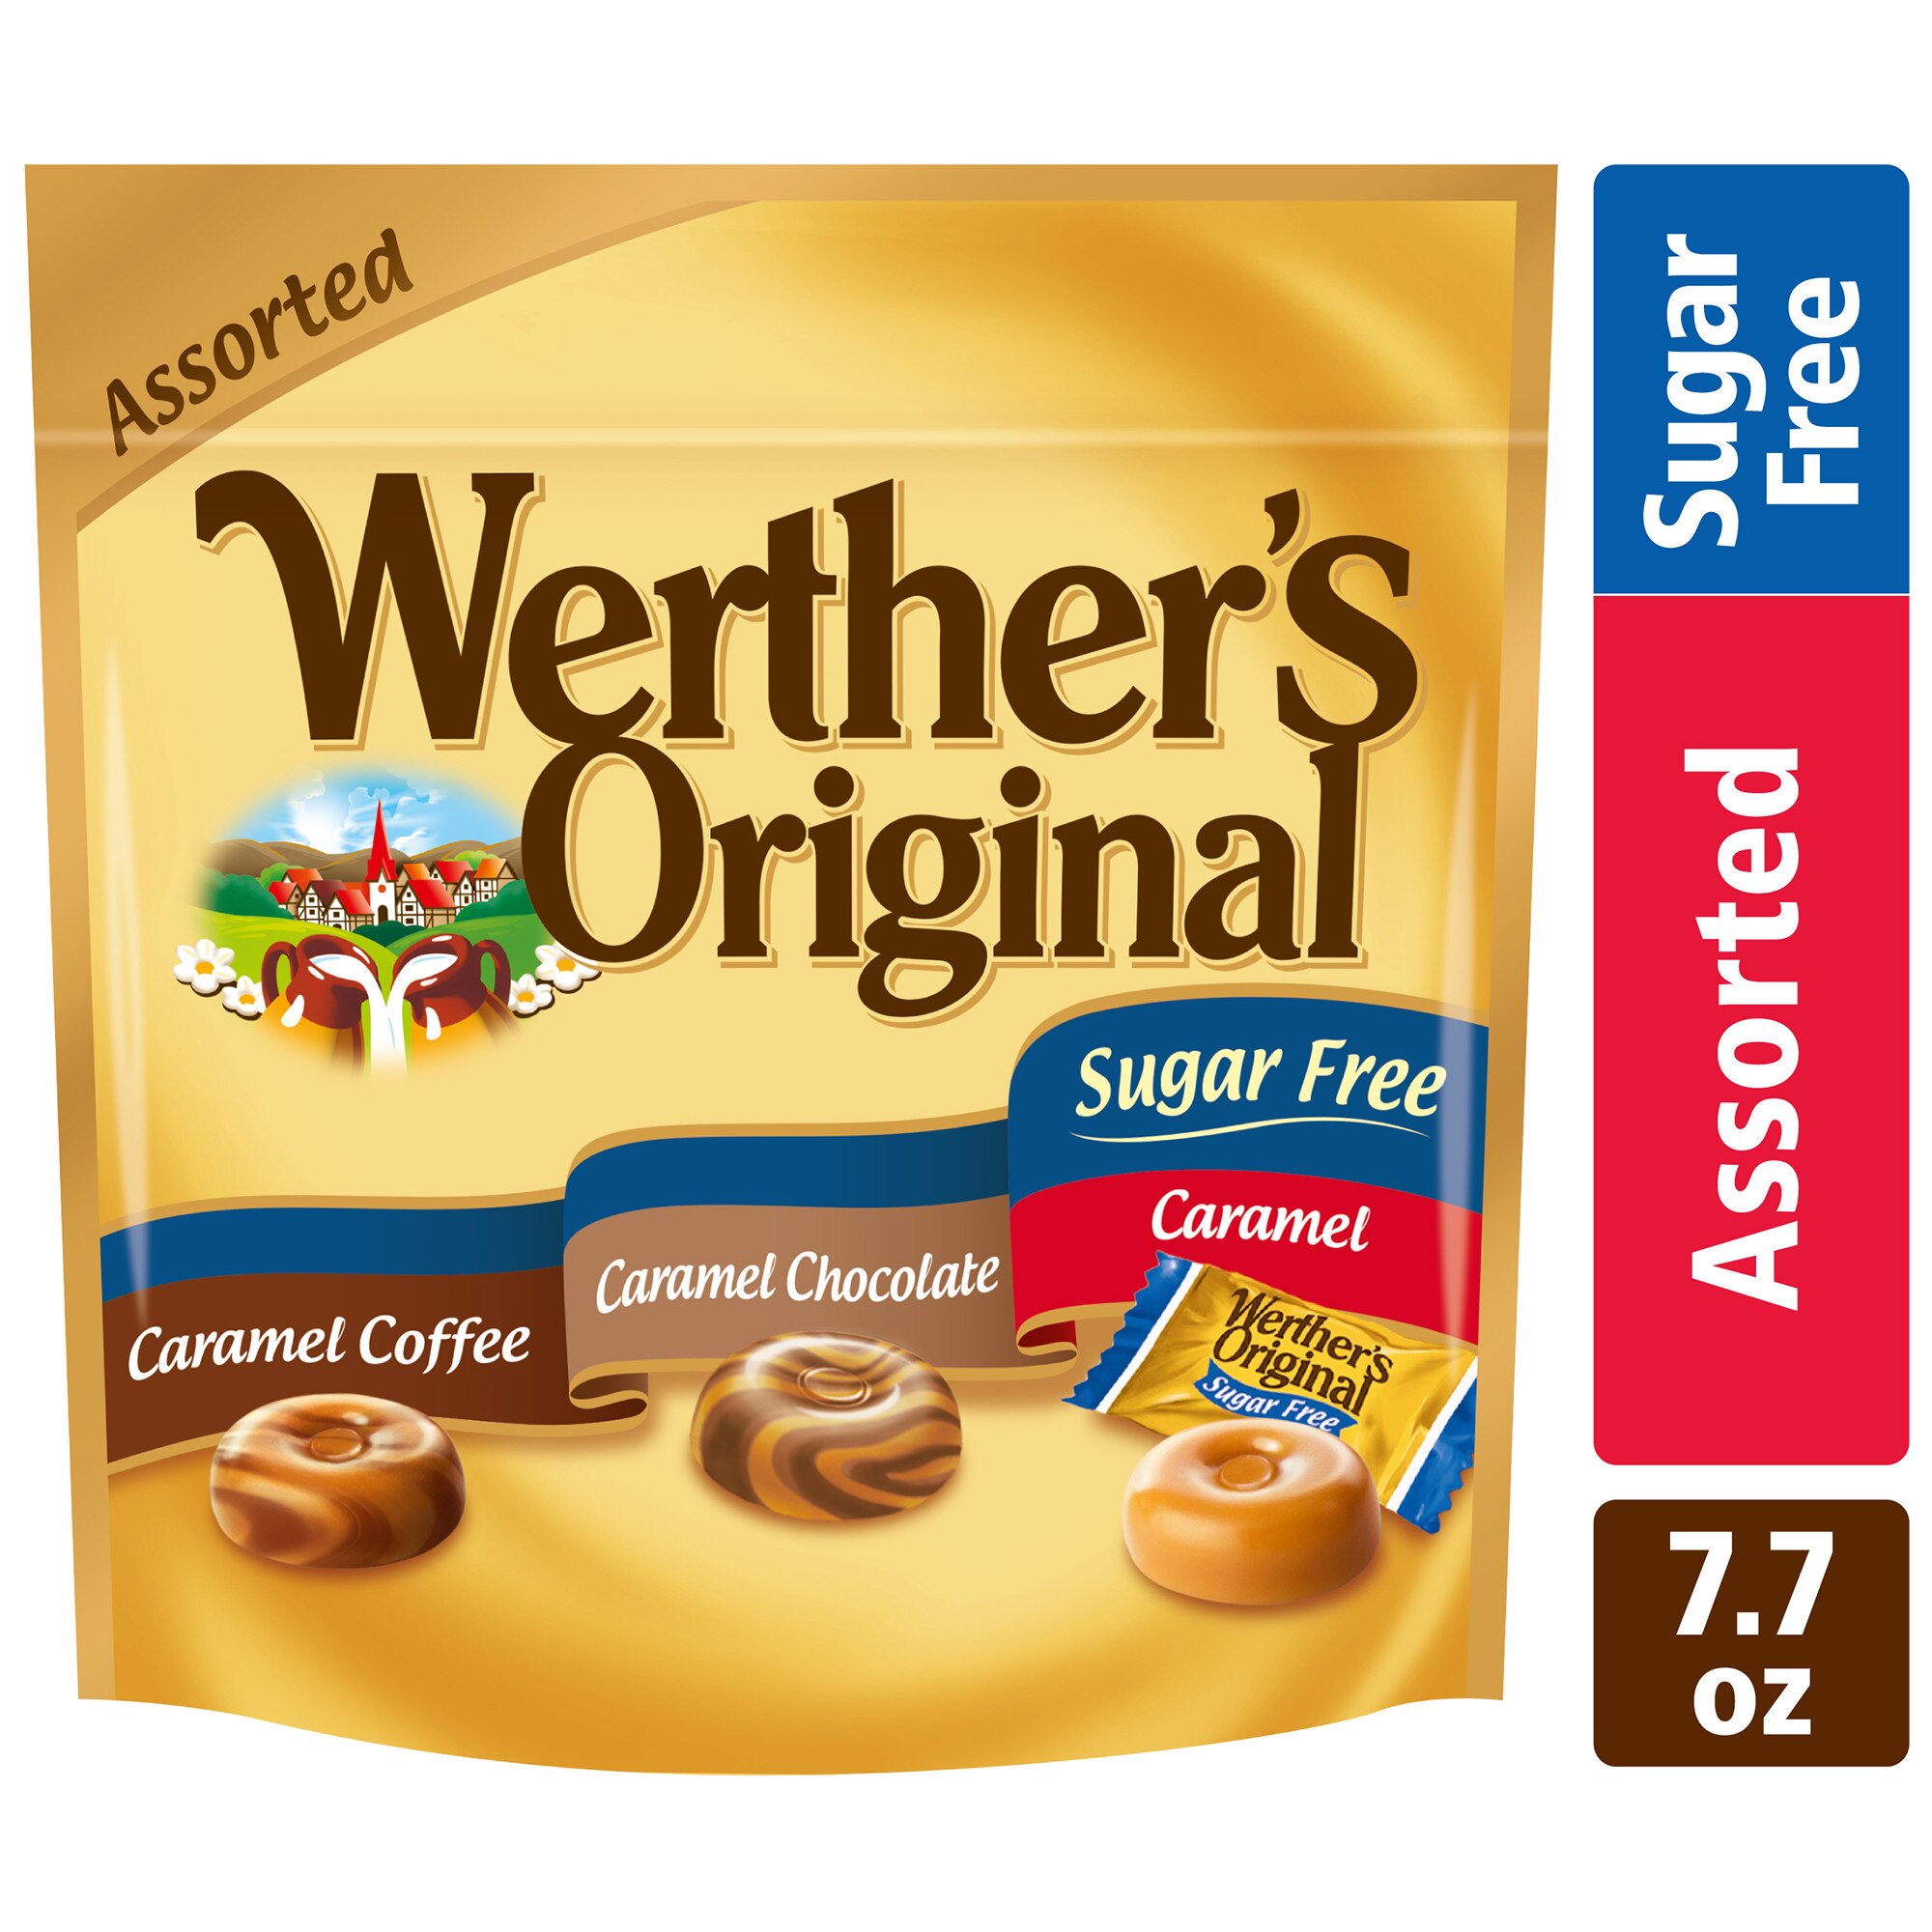 Wether's - Caramelos duros surtidos, Caramel, sin azúcar, 7.7 oz